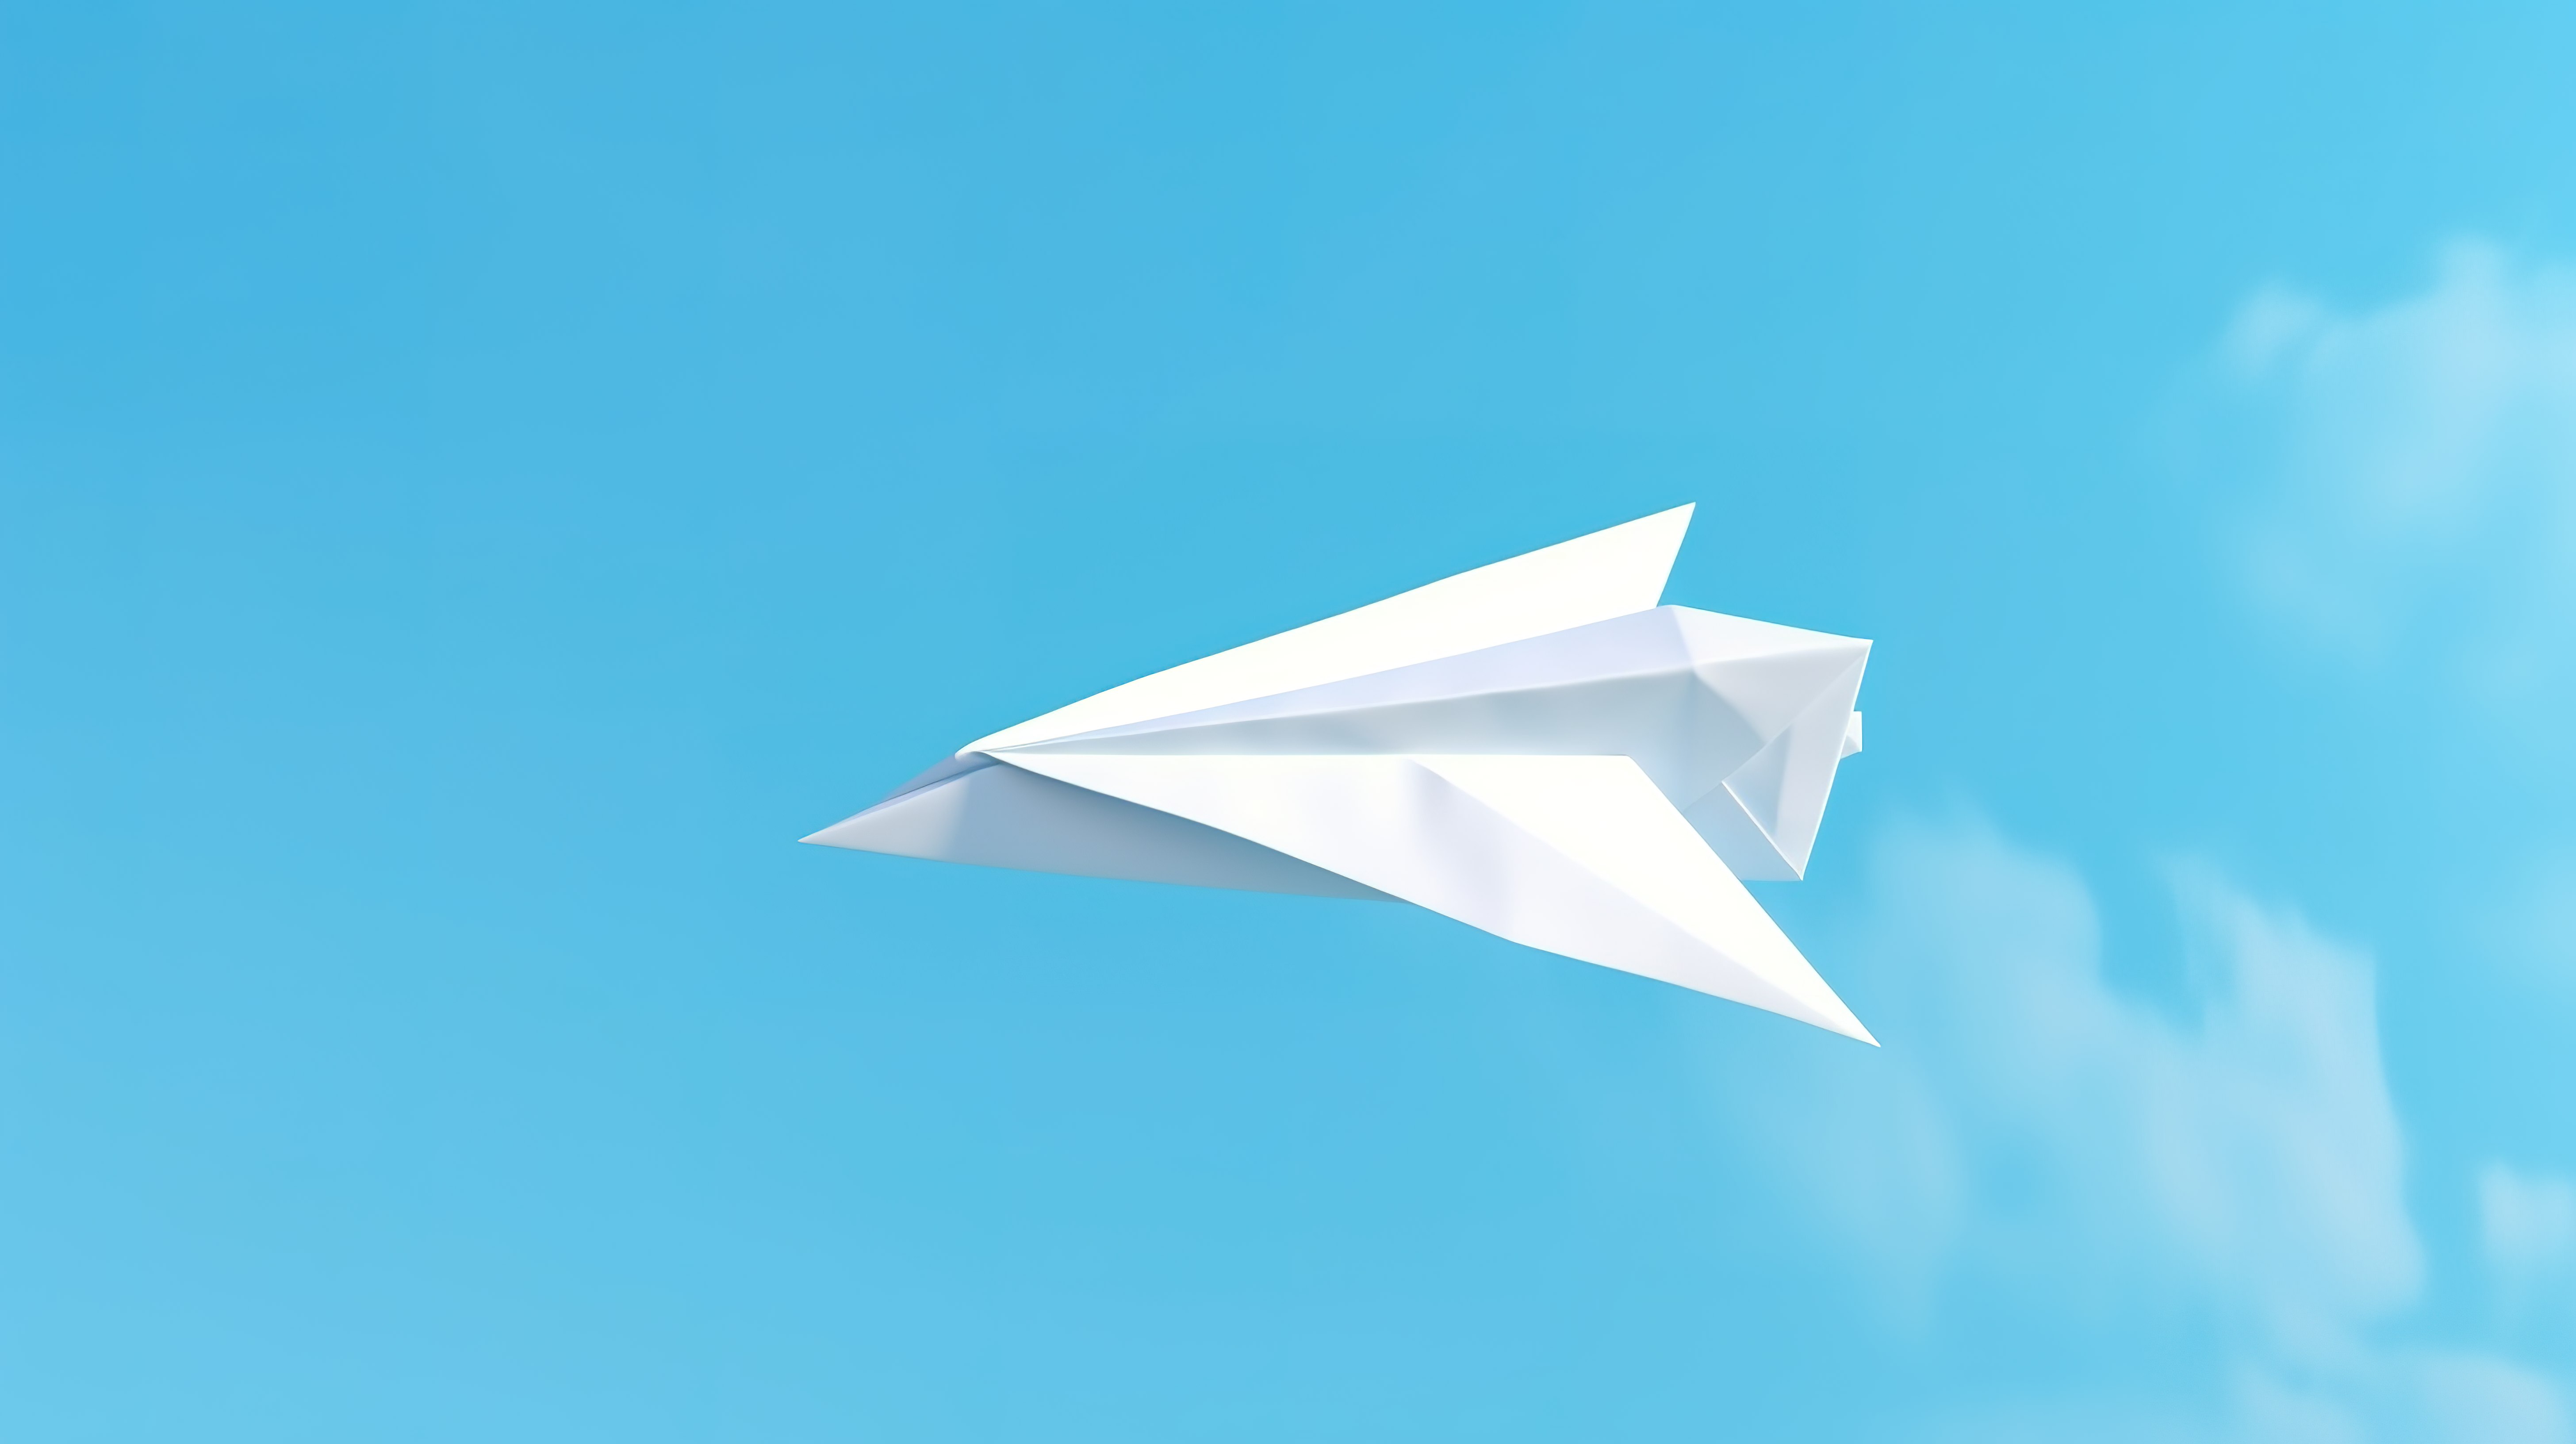 蓝色背景上向上指向的白皮书飞机象征着航空邮寄和业务方向 3D 插图图片